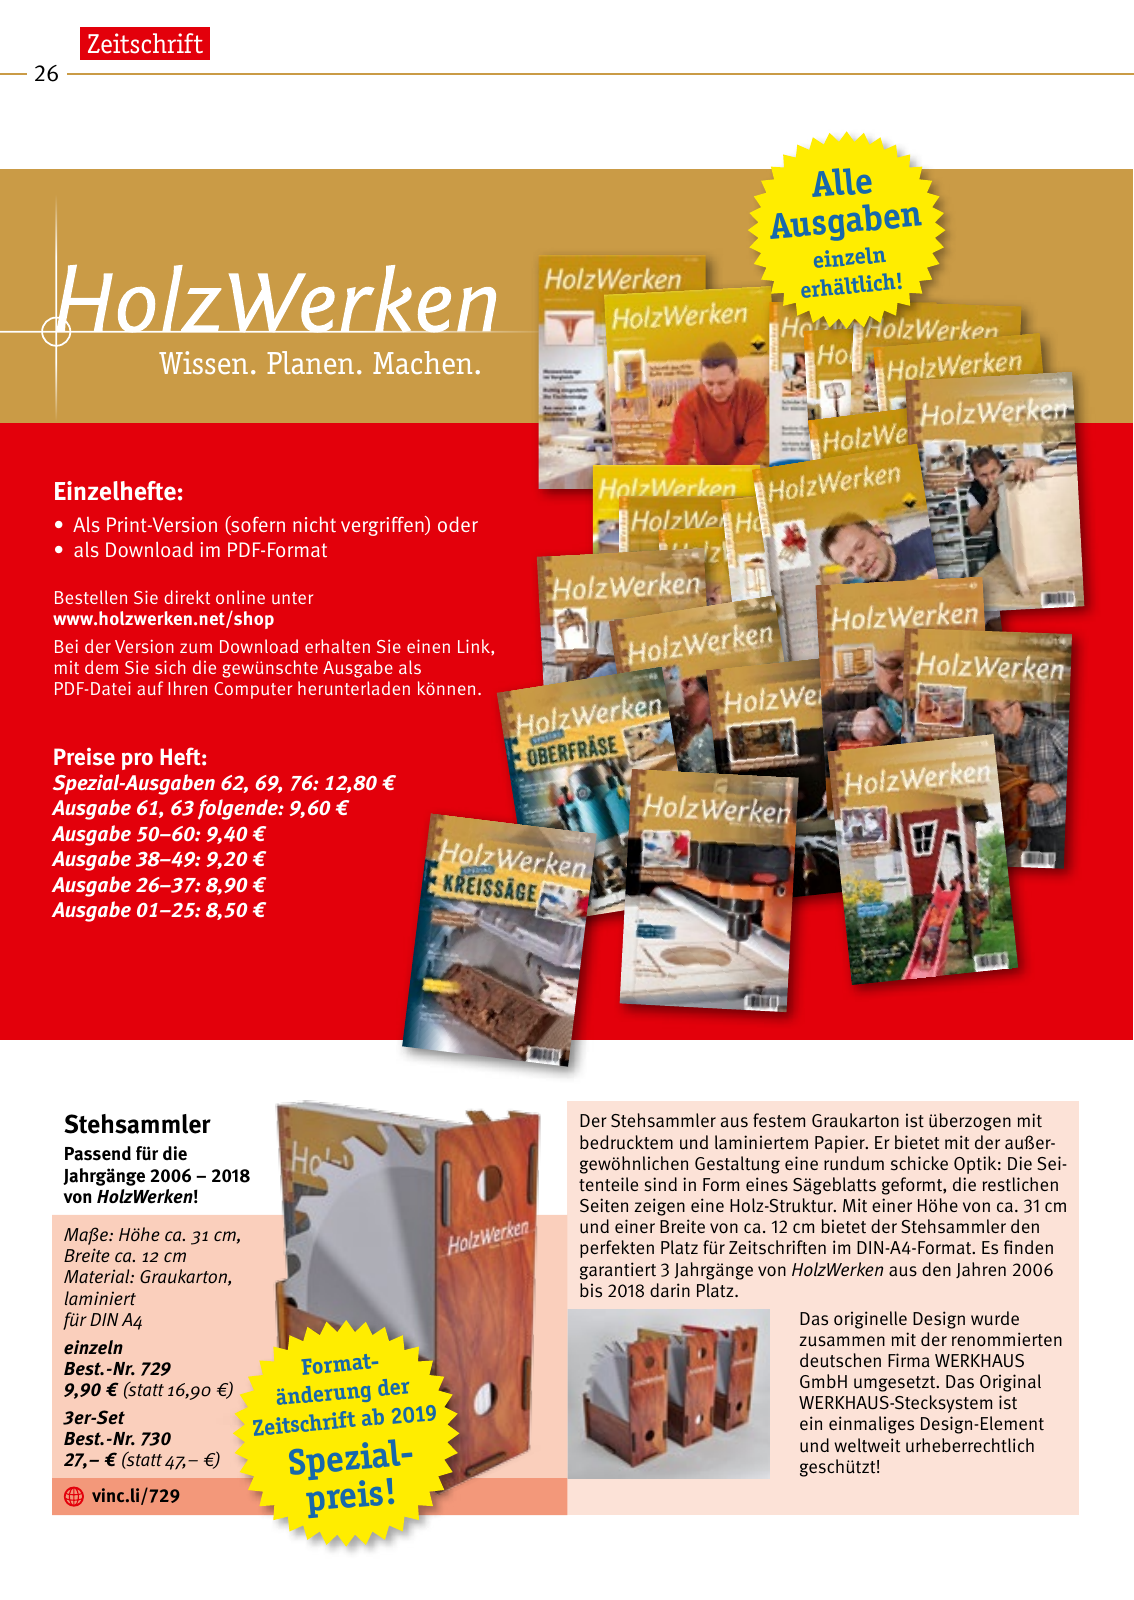 Vorschau HolzWerken Katalog 2019 Seite 26